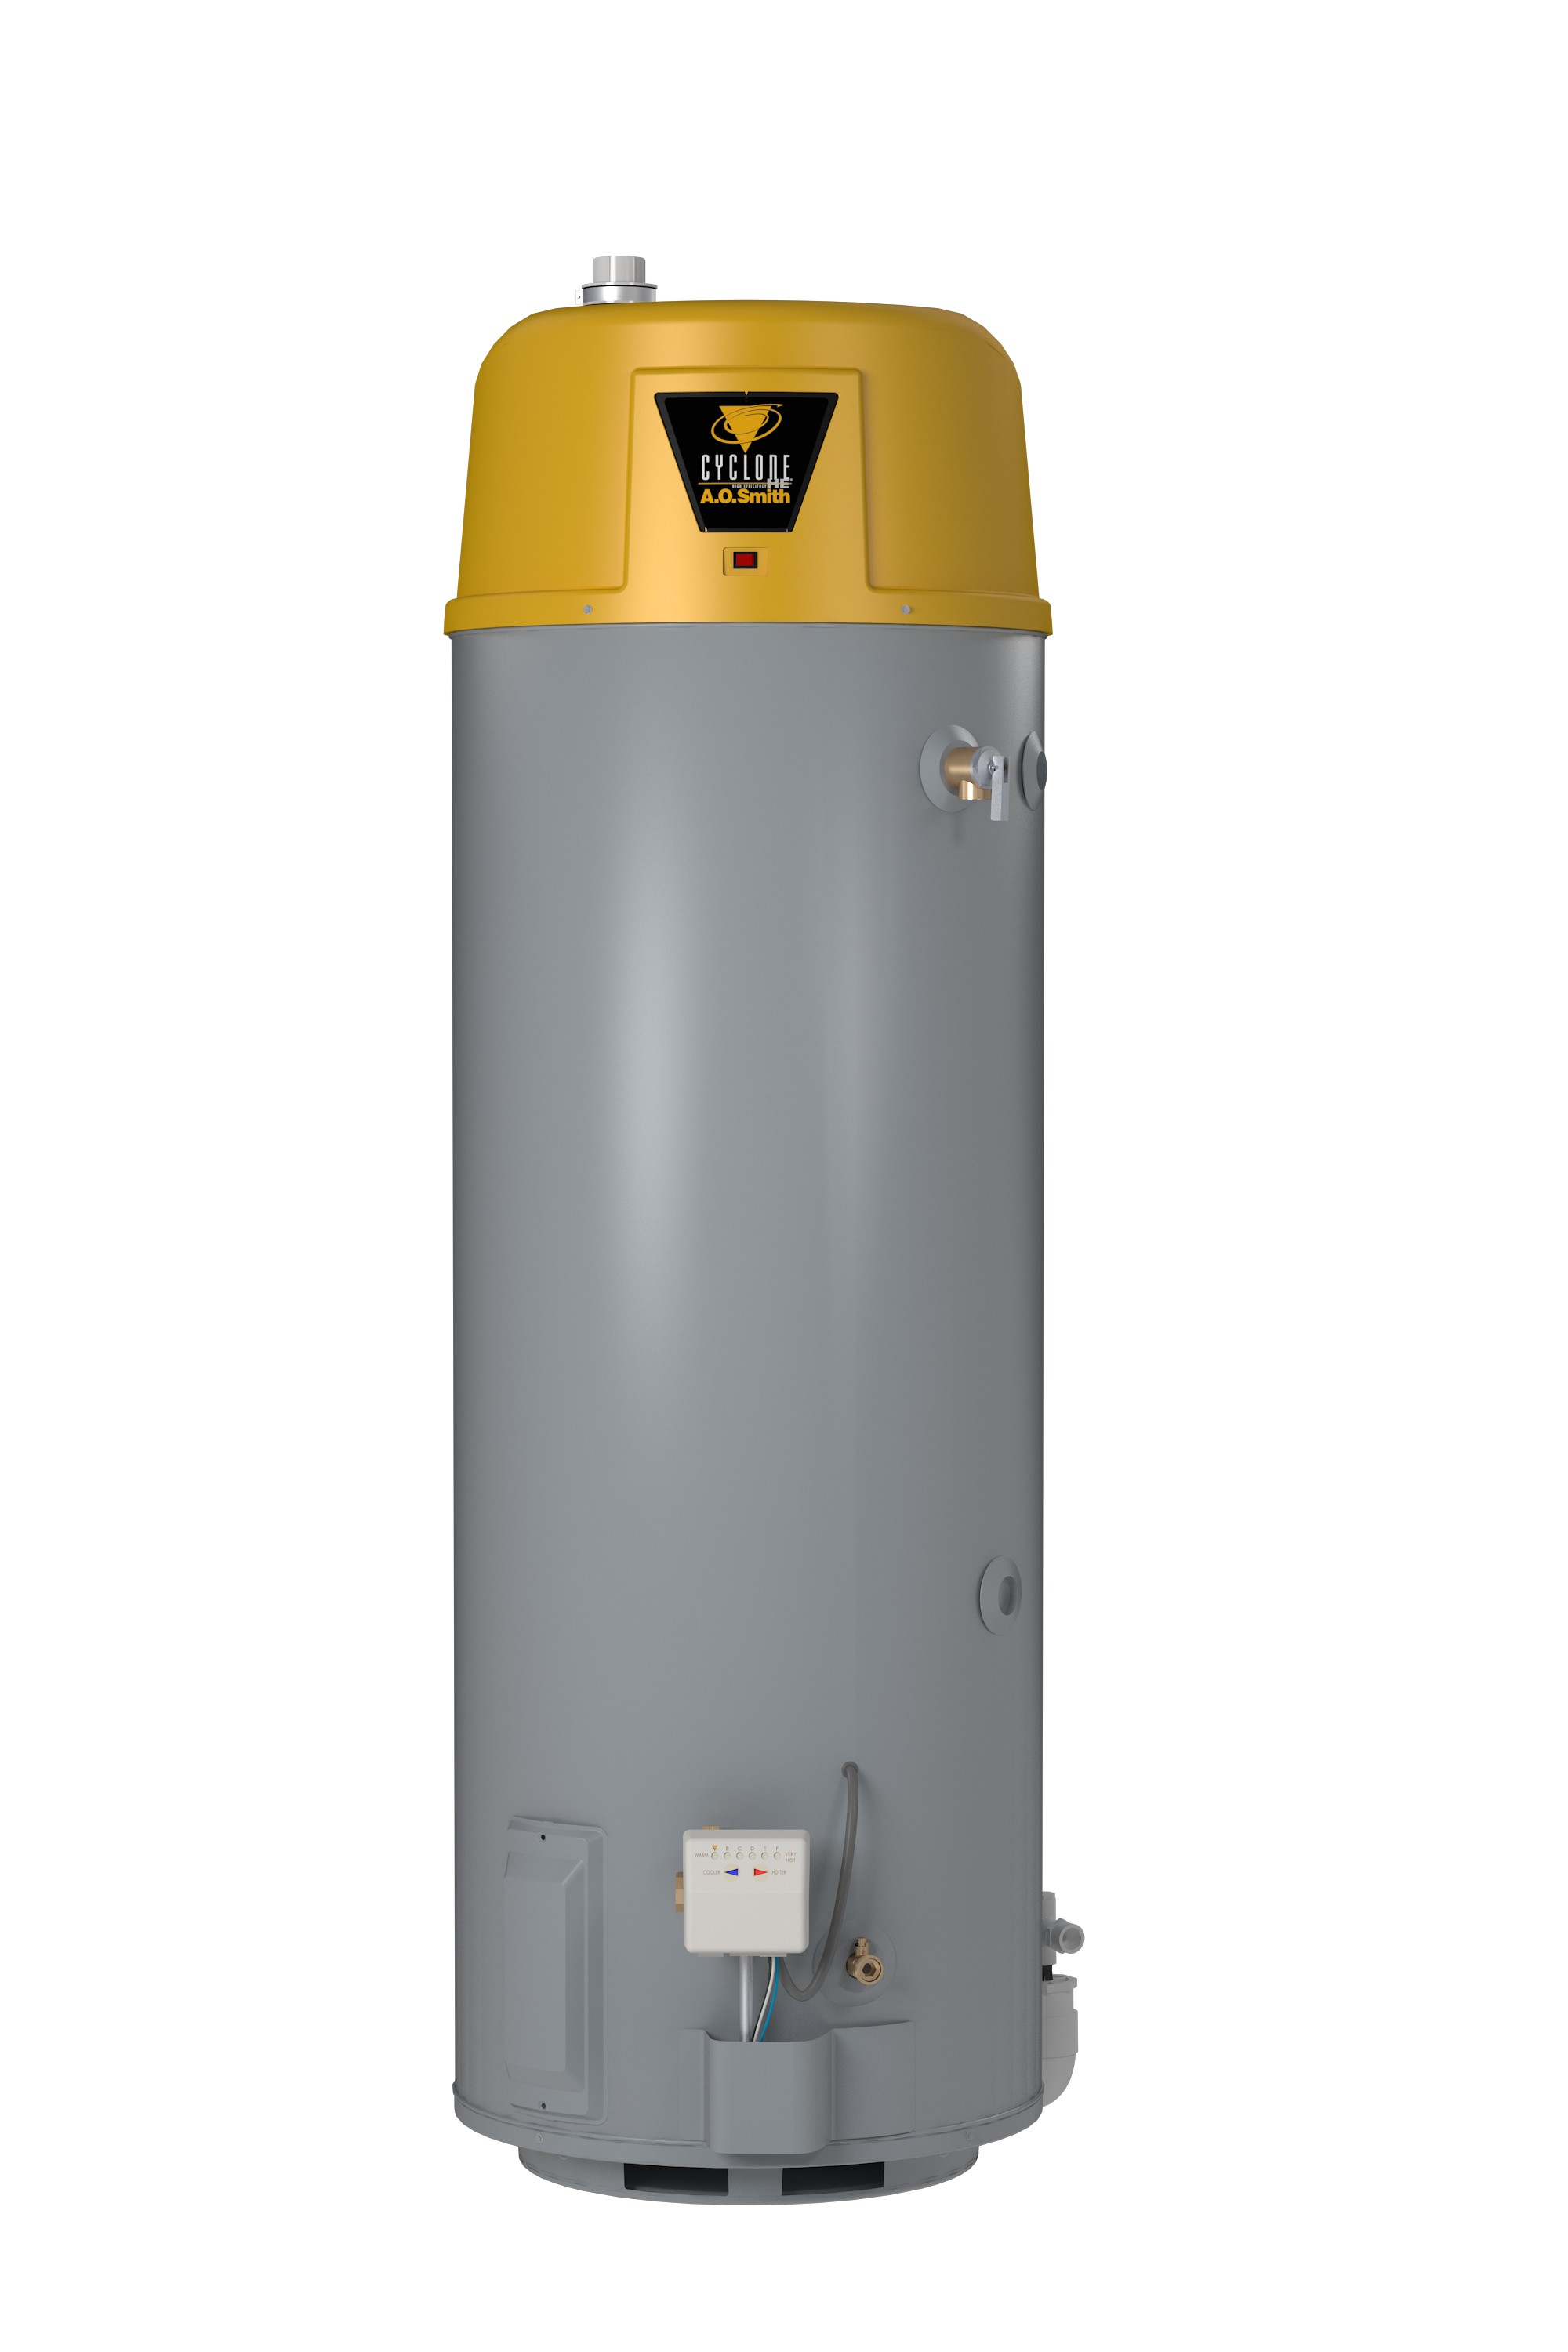 Ao Smith Btx 80 Gas Water Heater Cyclone Xi Gas Water Heater